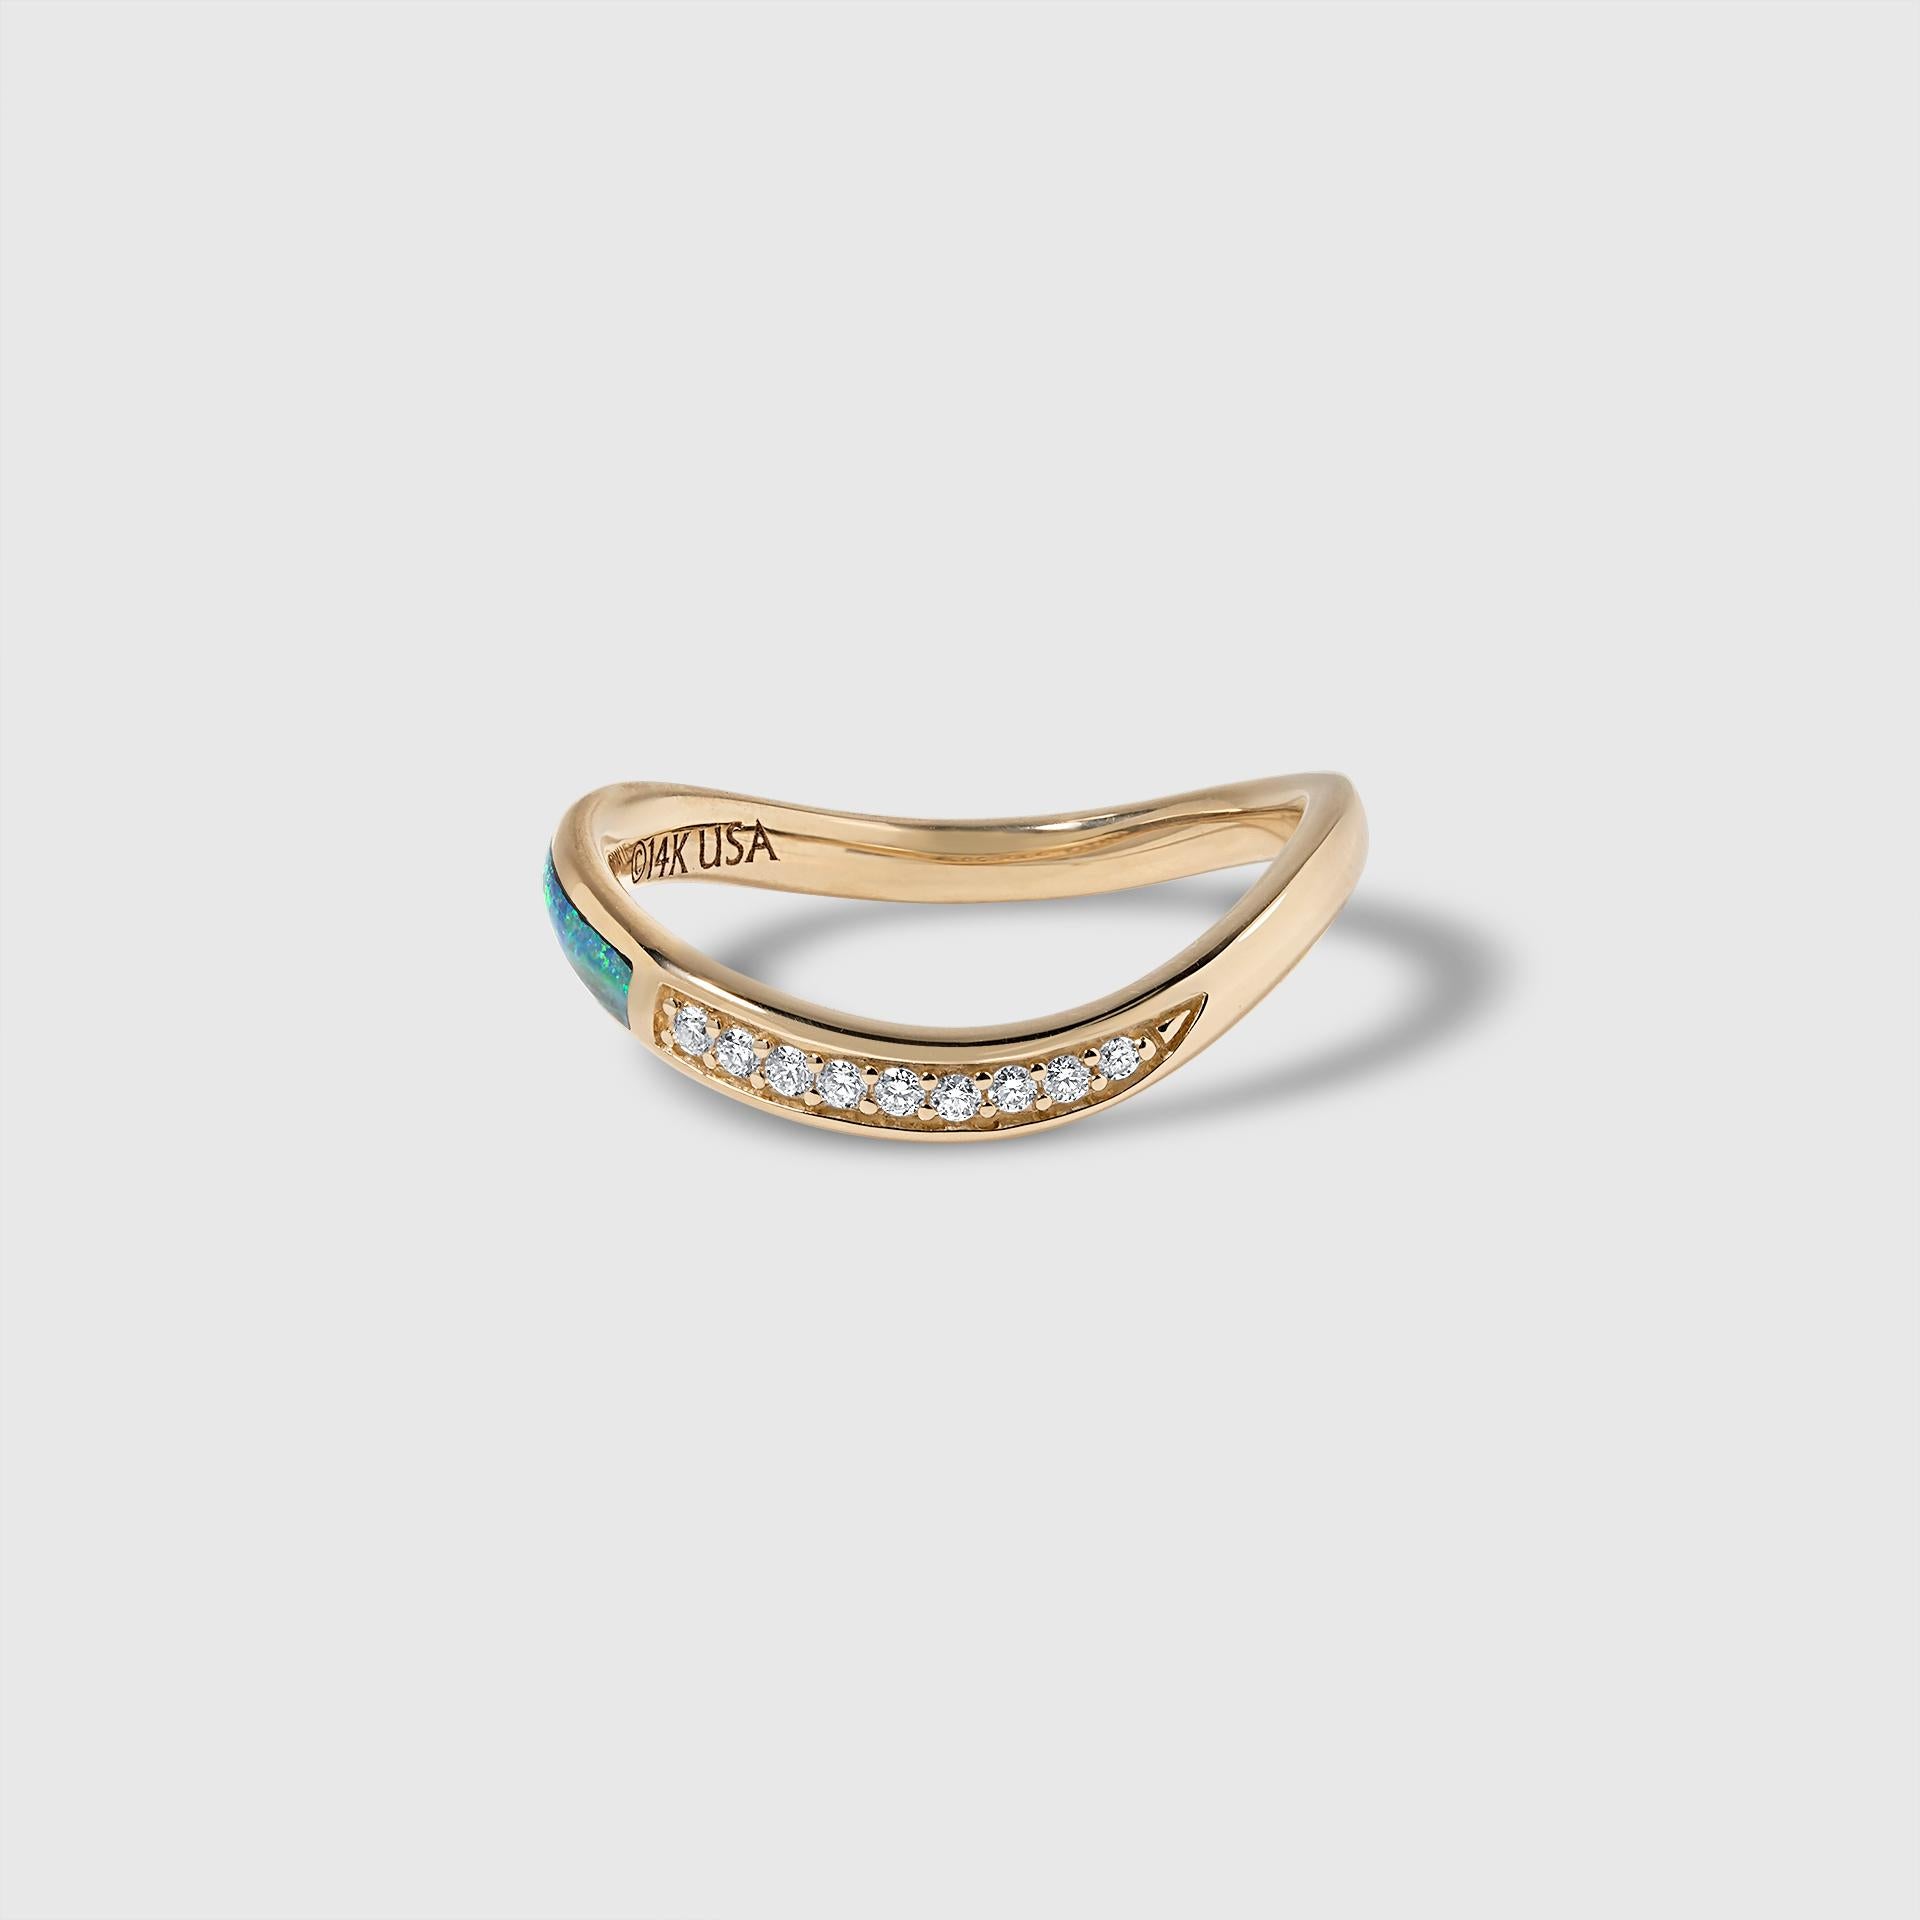 High Grade (Five Star) Australian Opal und Diamant Wavy Stacker Ring, 14kt Gold, Größe 7.  Kundenspezifische Größen sind erhältlich.

Alle Designs können in vielen Steinsorten von Kabana bestellt werden, darunter: Dornröschen-Türkis, Türkis,